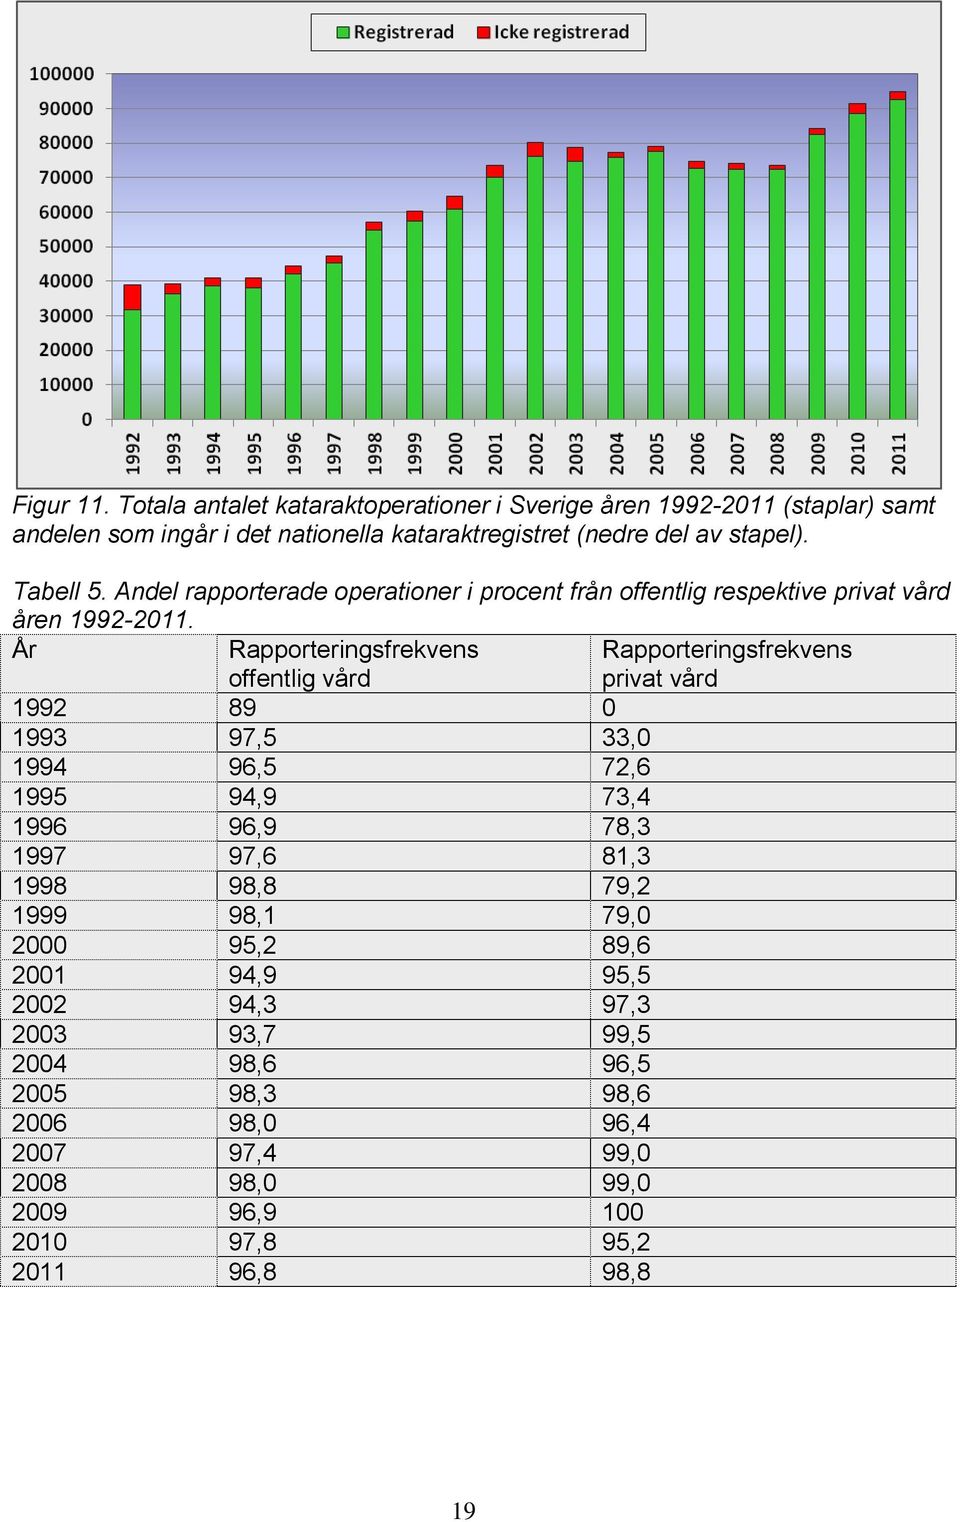 Tabell 5. Andel rapporterade operationer i procent från offentlig respektive privat vård åren 1992-2011.